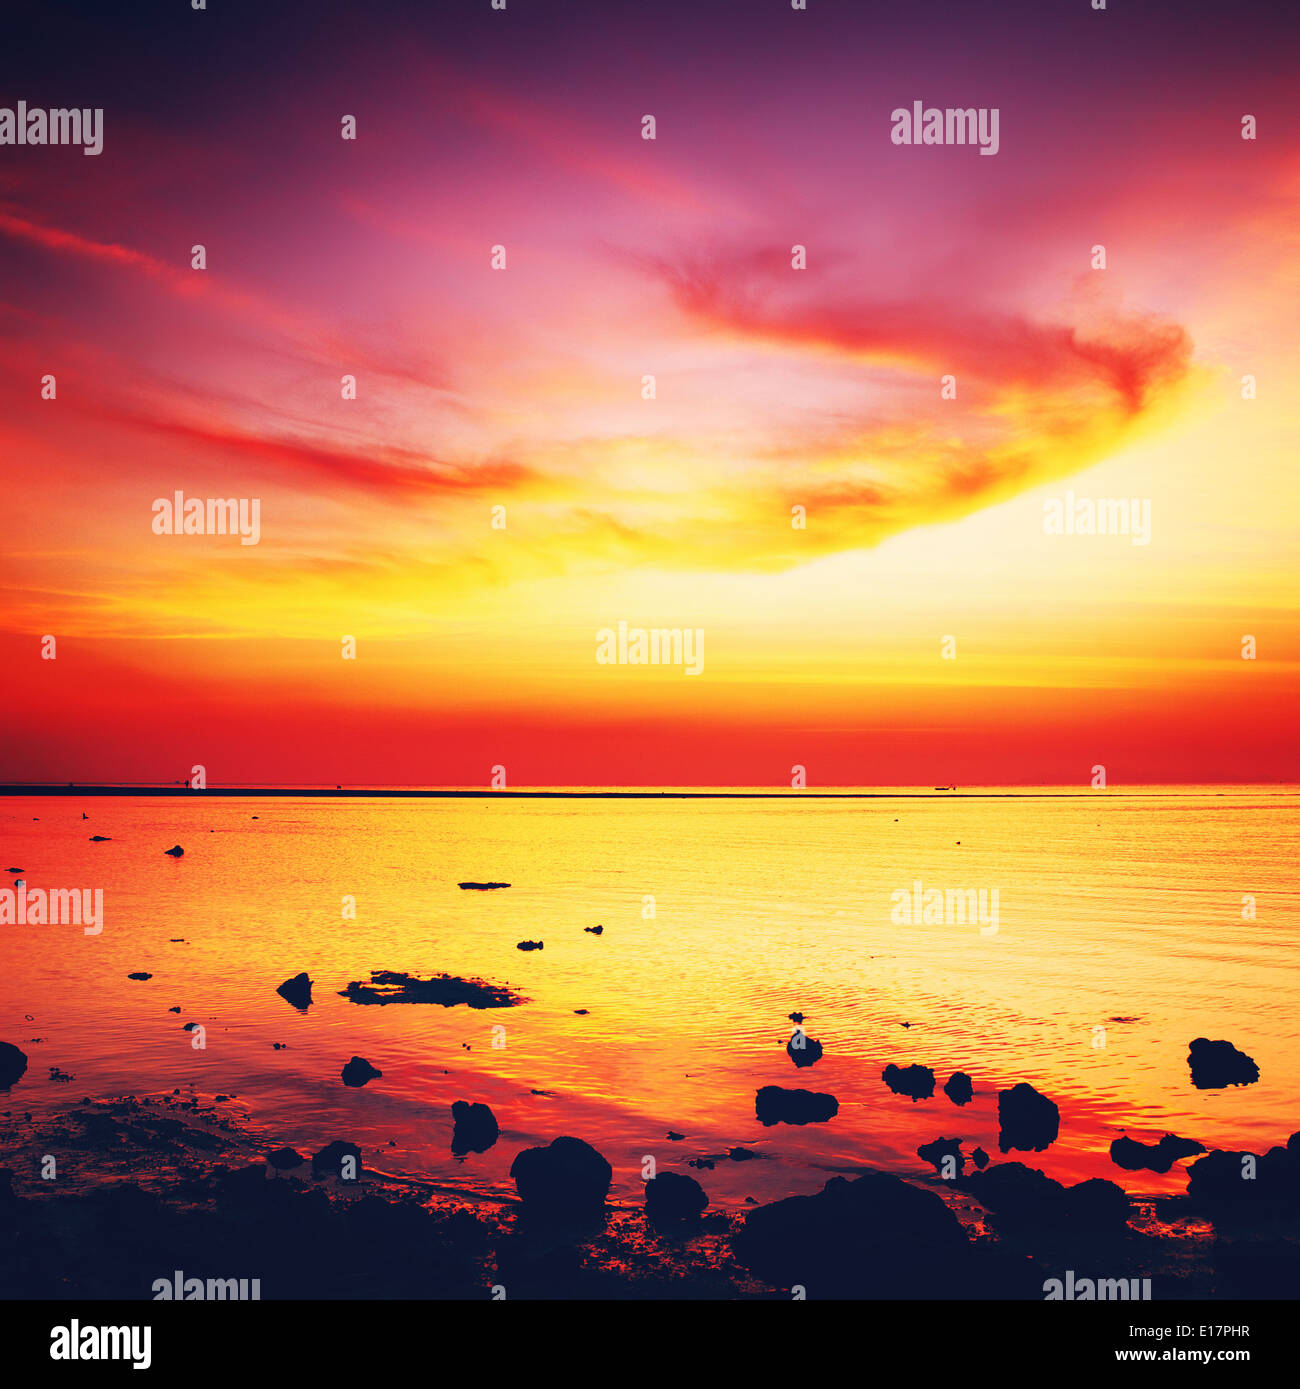 beautiful sunset over calm sea, samui, thailand Stock Photo